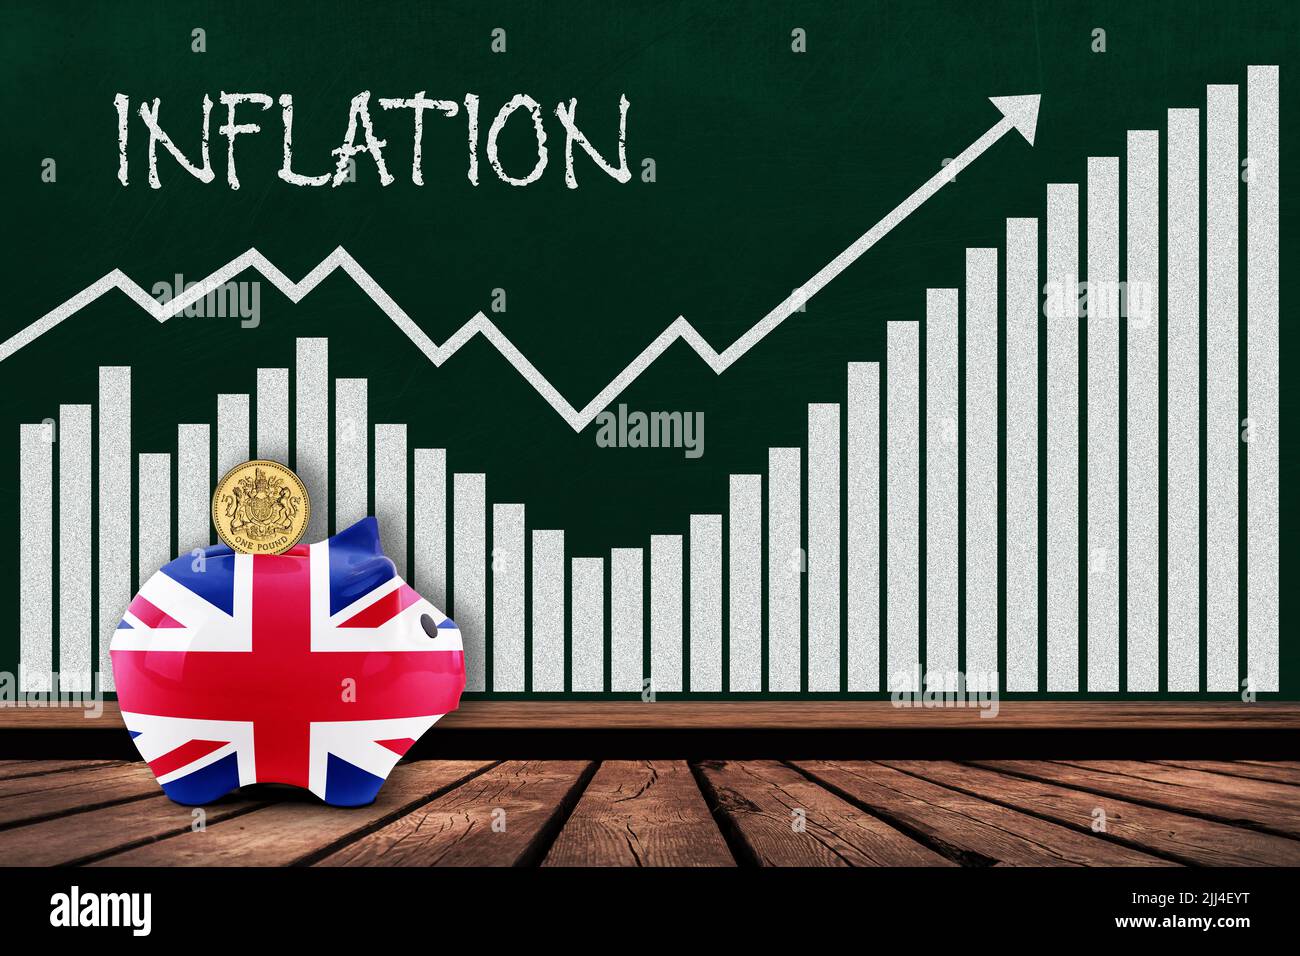 Concepto de inflación en el Reino Unido mostrando un gráfico de barras en una pizarra con un banco de cerdos pintado con bandera británica y una moneda de una libra. Ilustración del aumento de la inflación c Foto de stock